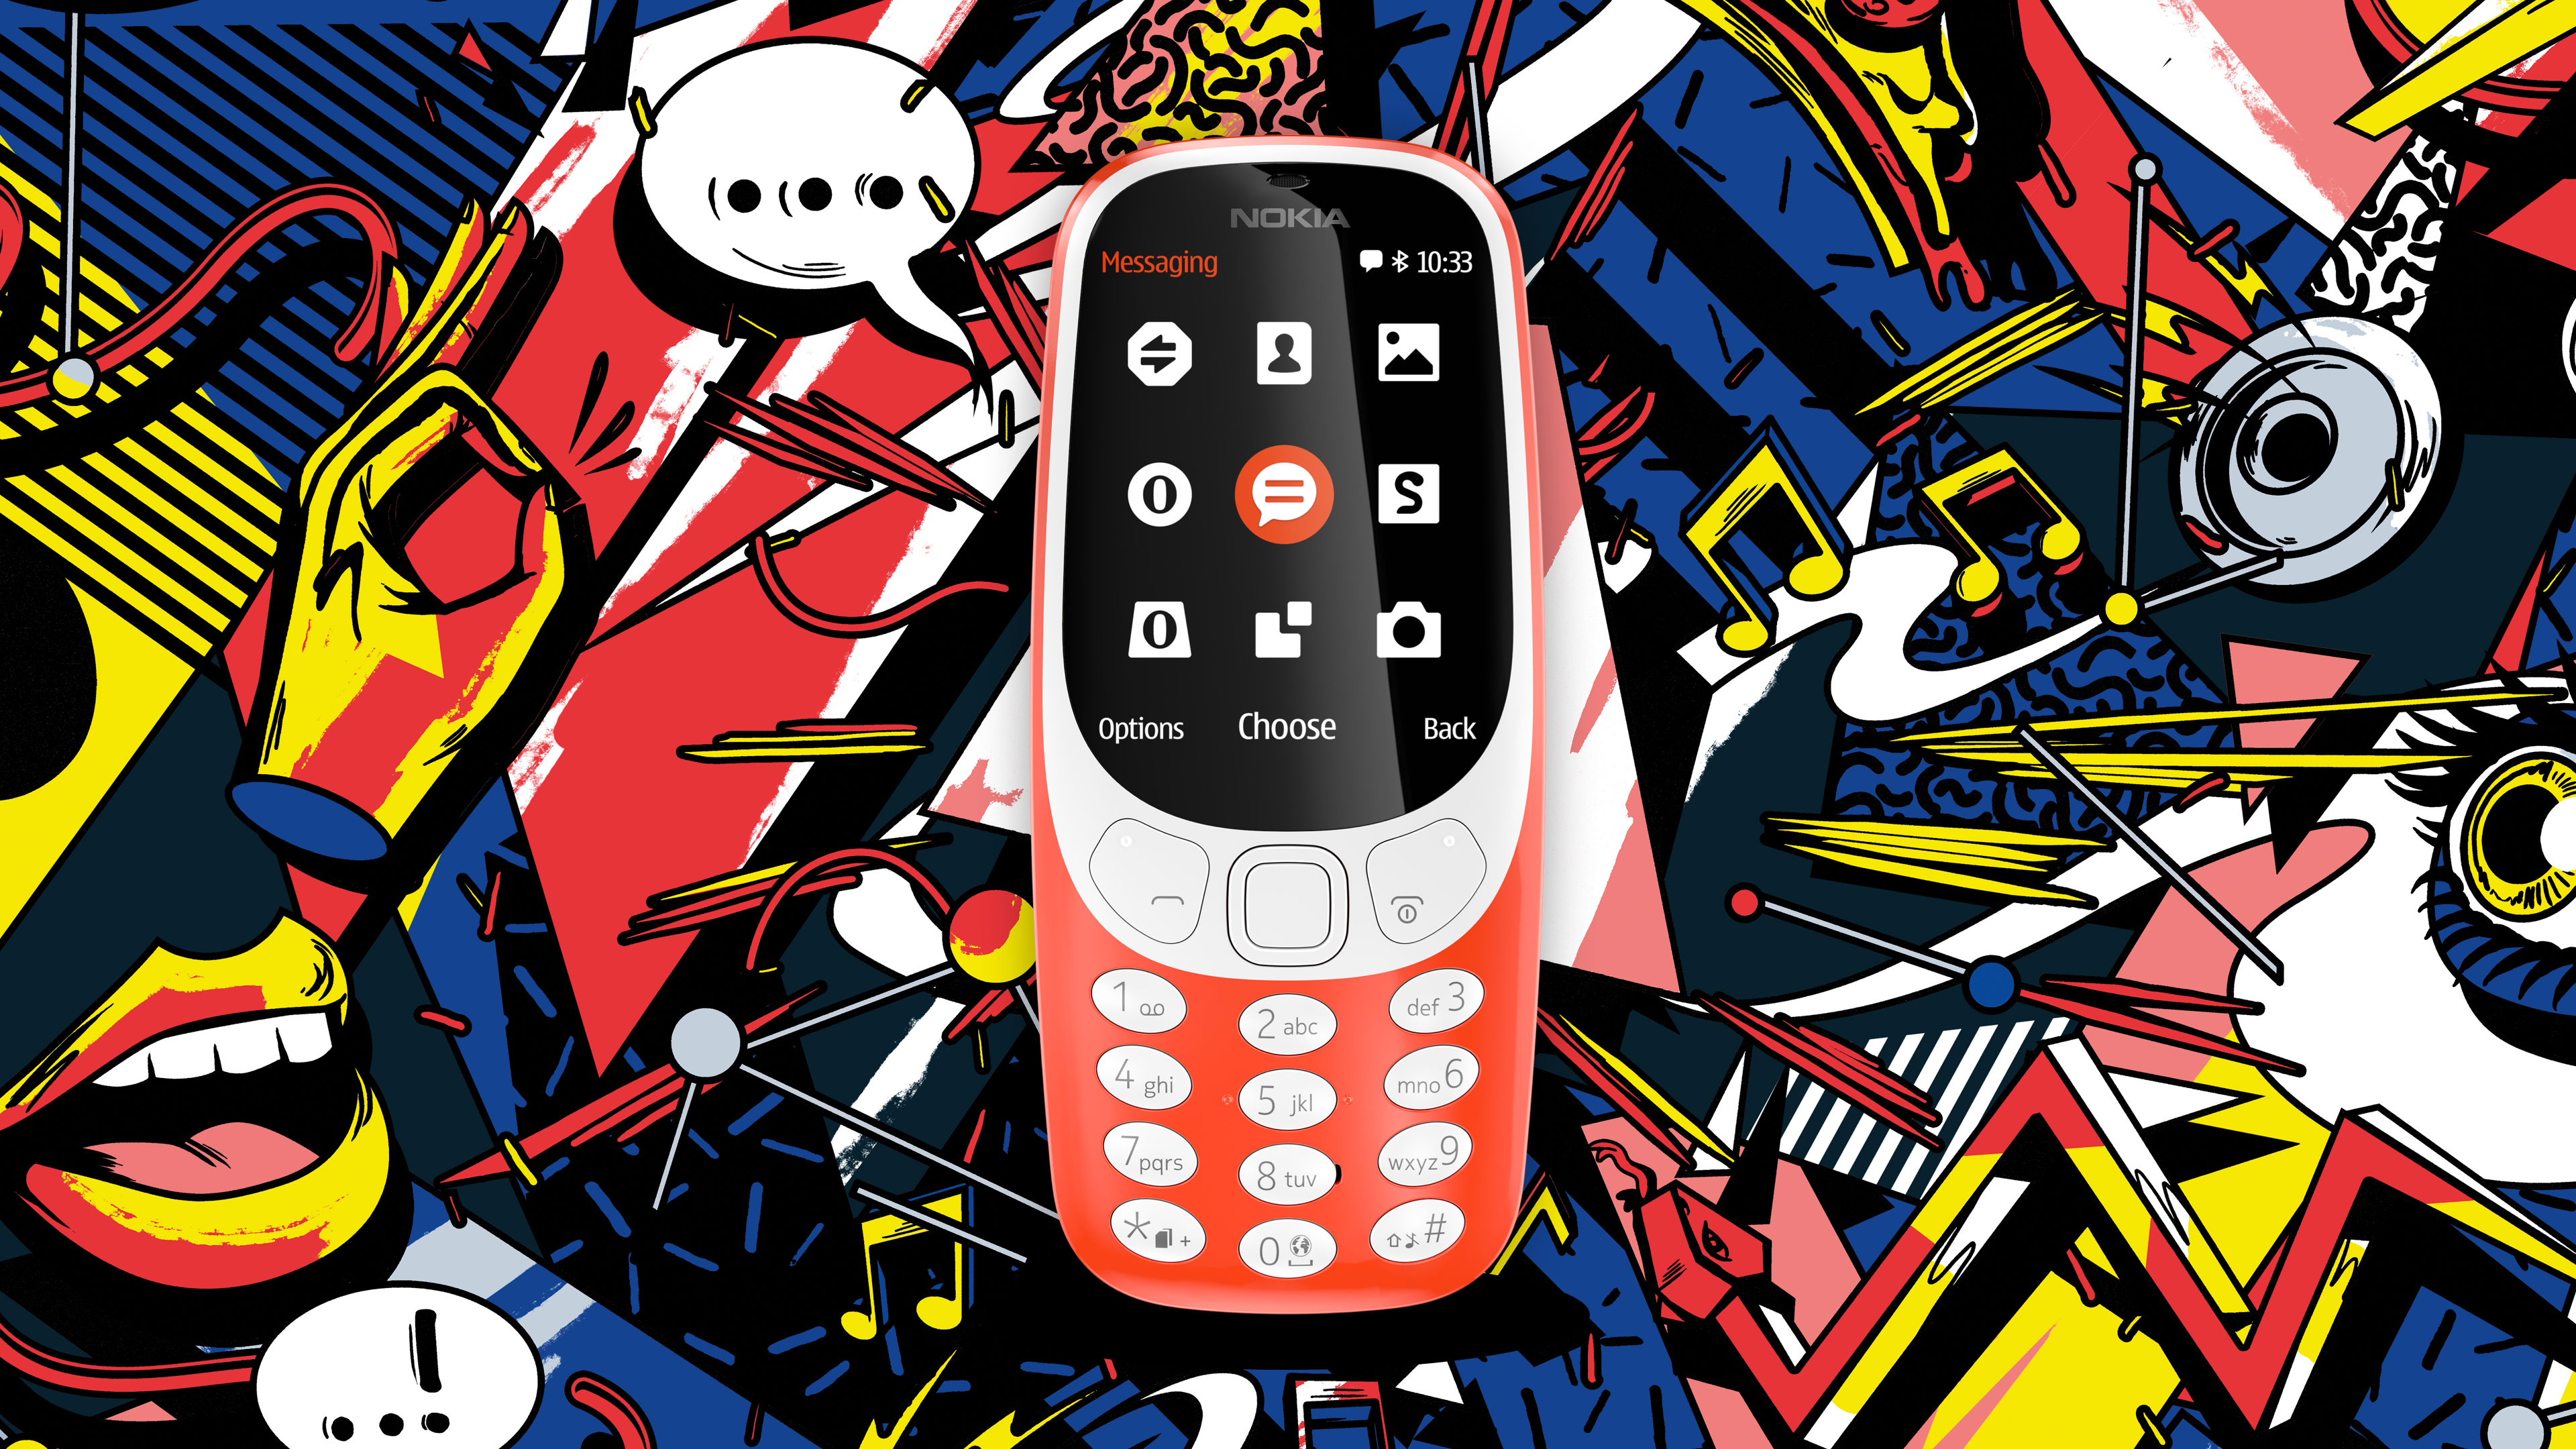 Nokia 3310 Dual SIM: Điện thoại Nokia 3310 Dual SIM là một trong những sản phẩm được nhiều người yêu thích vì thiết kế bền chắc và tính năng đa dạng. Hãy xem hình ảnh để khám phá vẻ ngoài độc đáo của Nokia 3310 Dual SIM này.